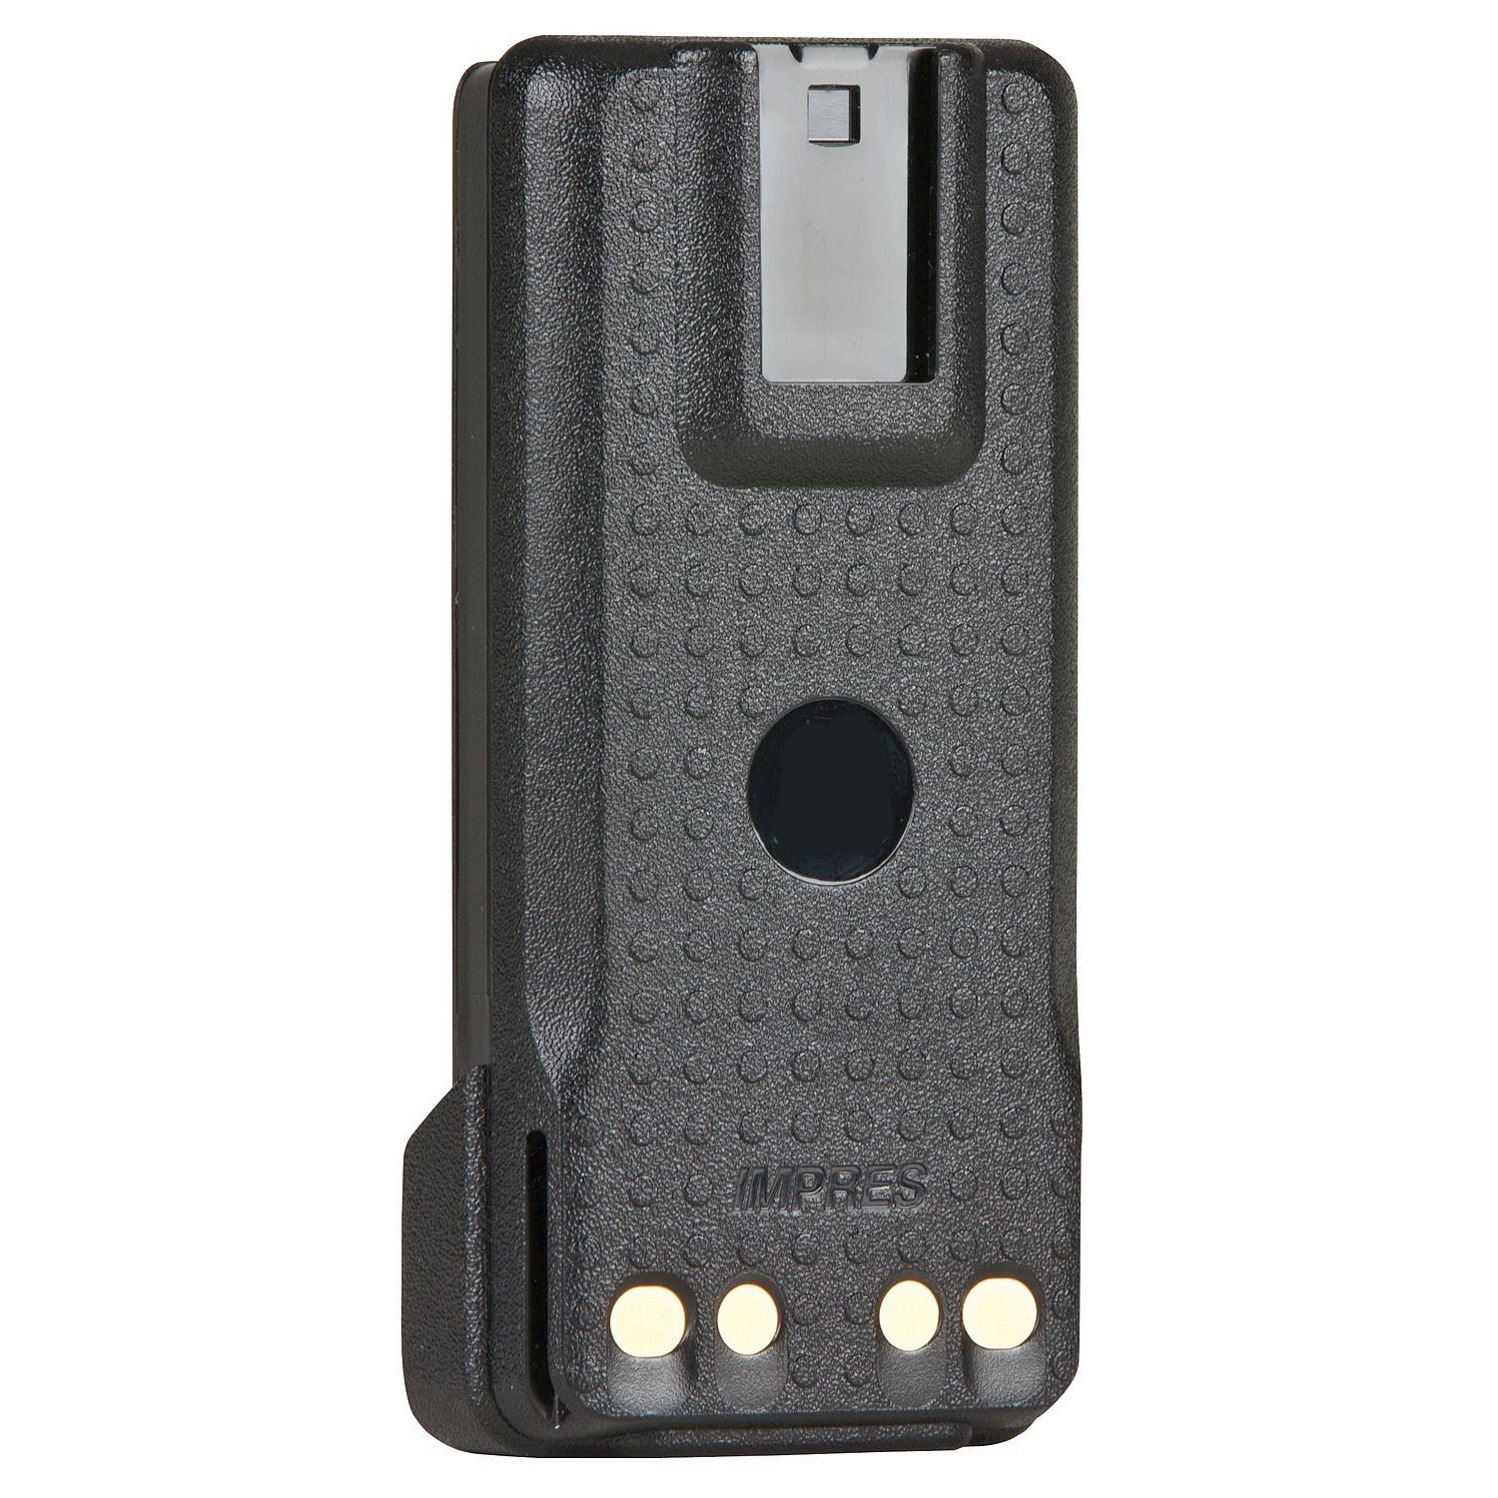 Аккумулятор PMNN4489 для р/ст Motorola (Китай), фото